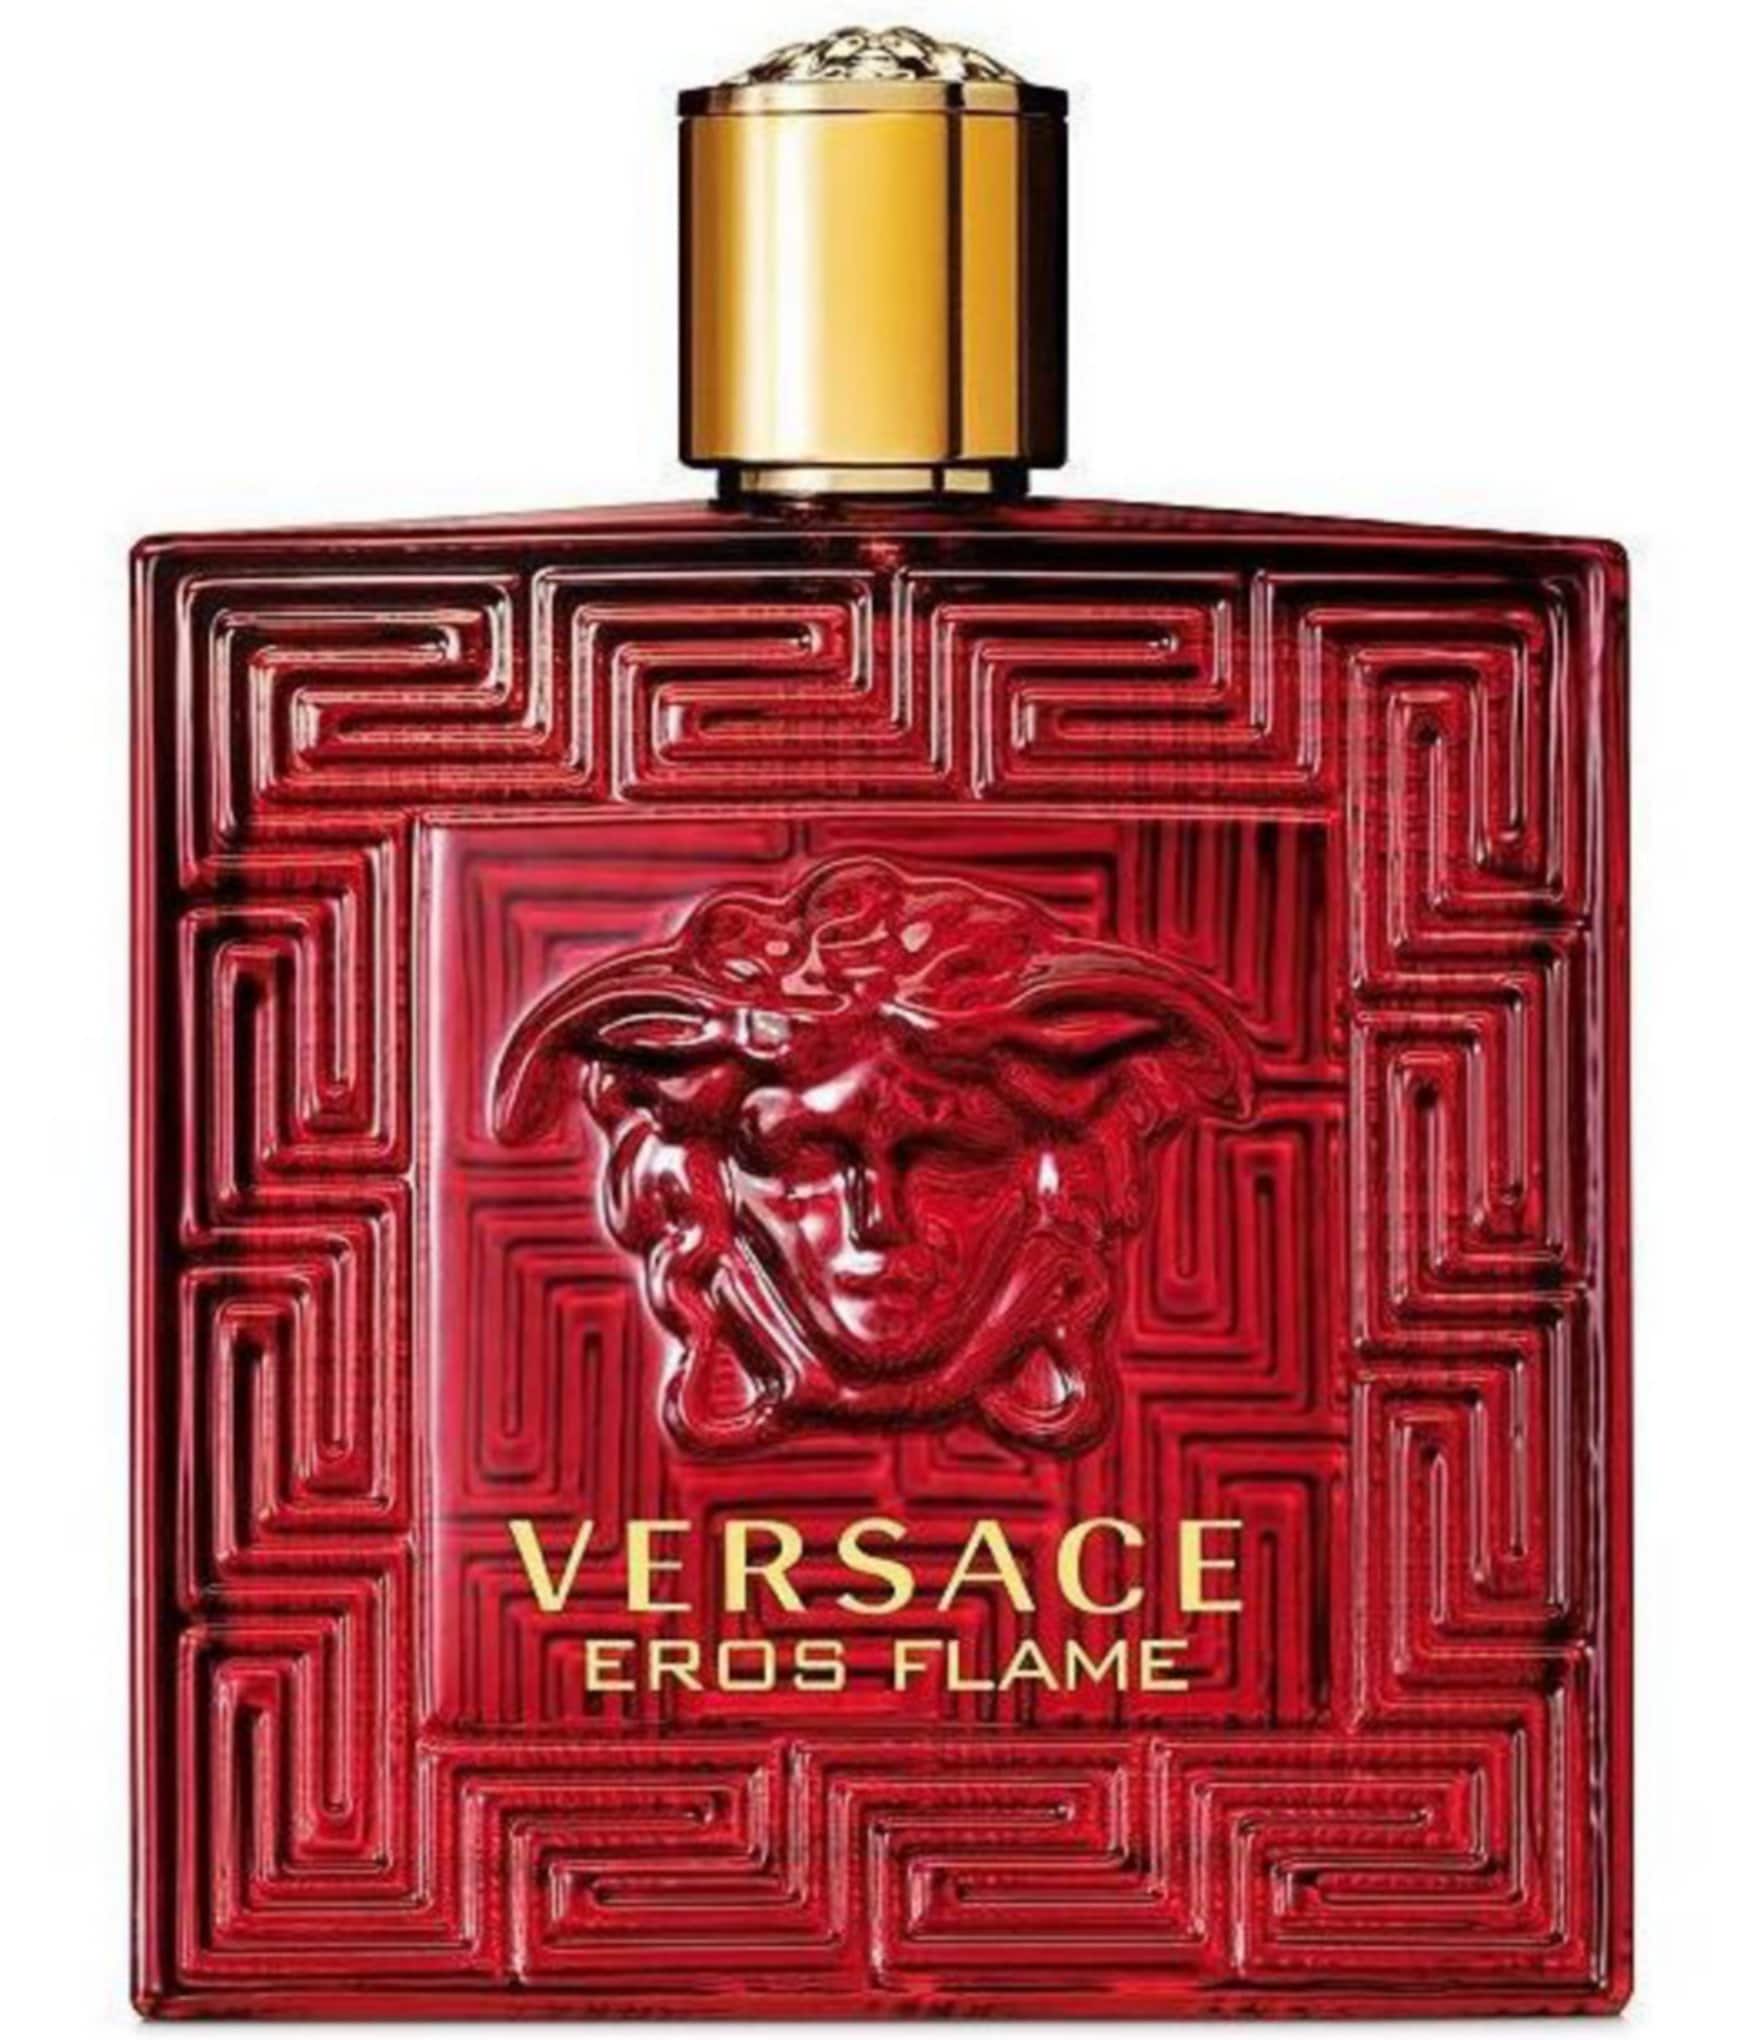 Versace Men's Eros Flame Eau de Parfum 